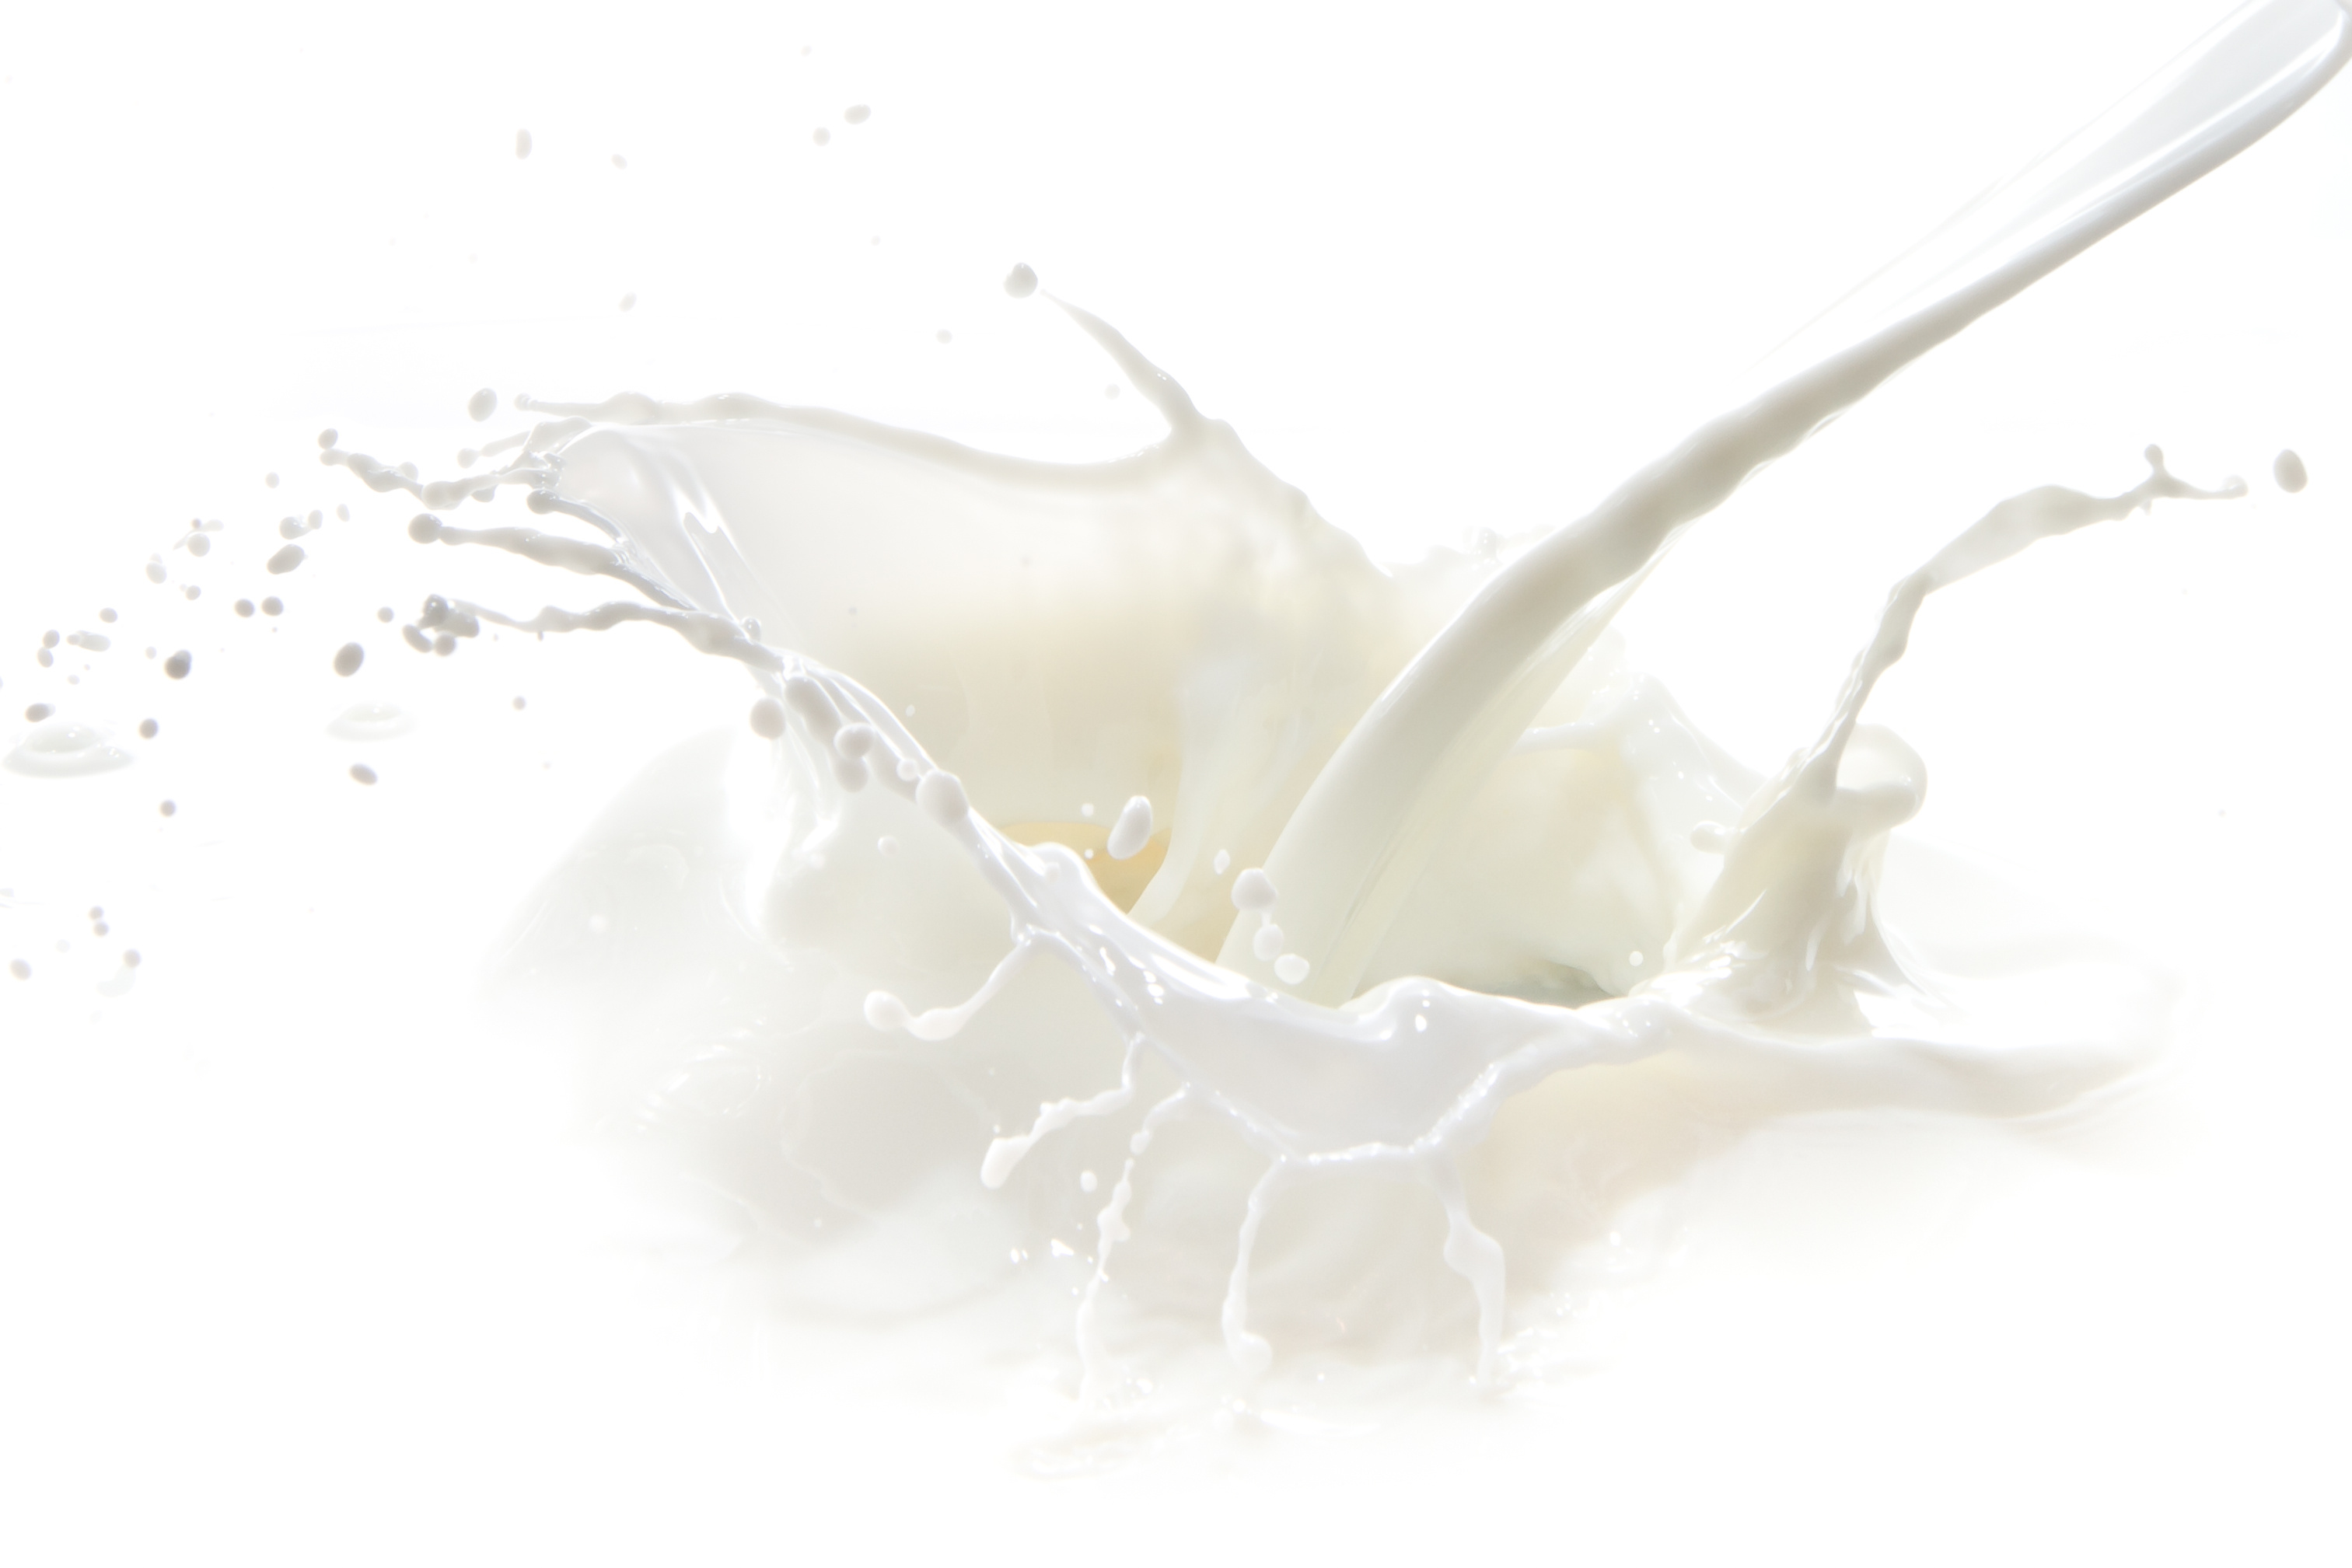 Il mondo agricolo e della cooperazione dall’assessore Giorgio Ferrero per parlare del prezzo del latte alla stalla